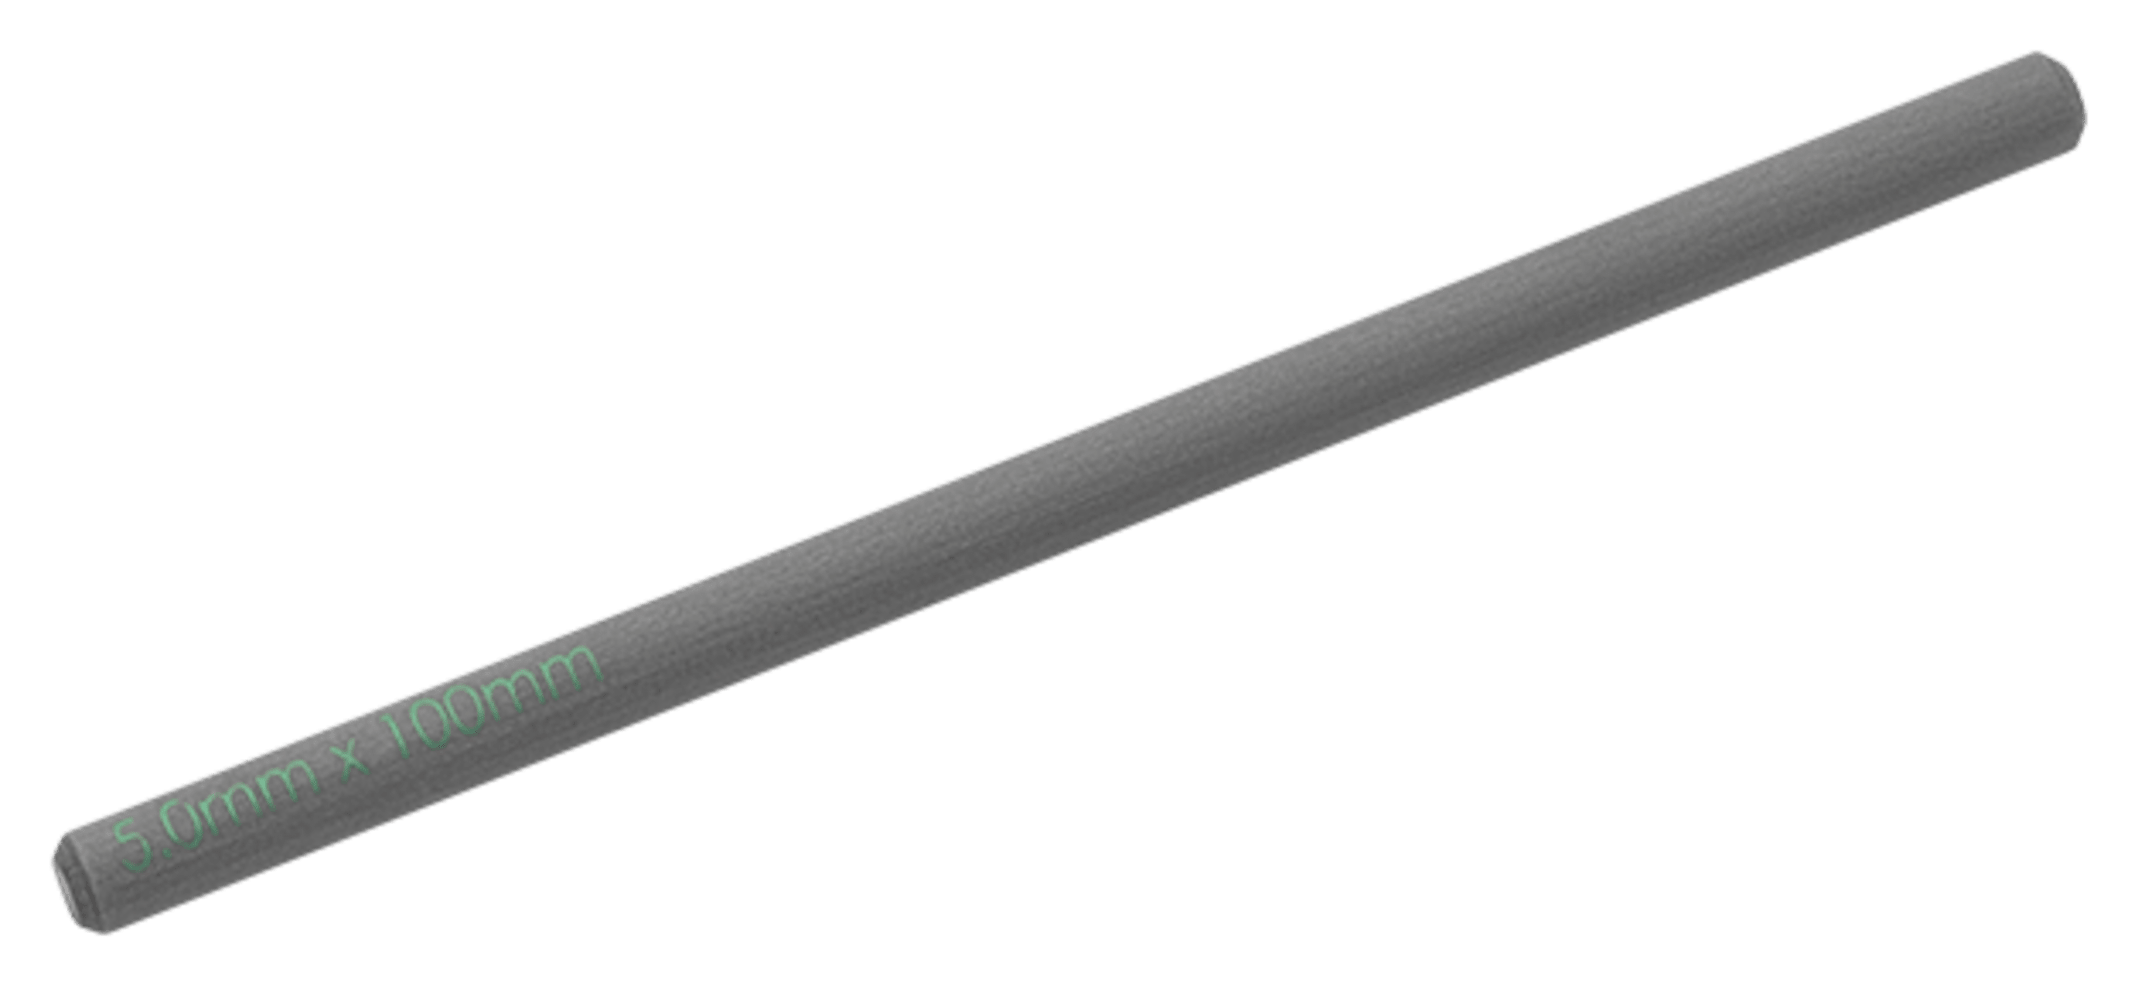 Carbon Fiber Rod, 5mm x 100mm